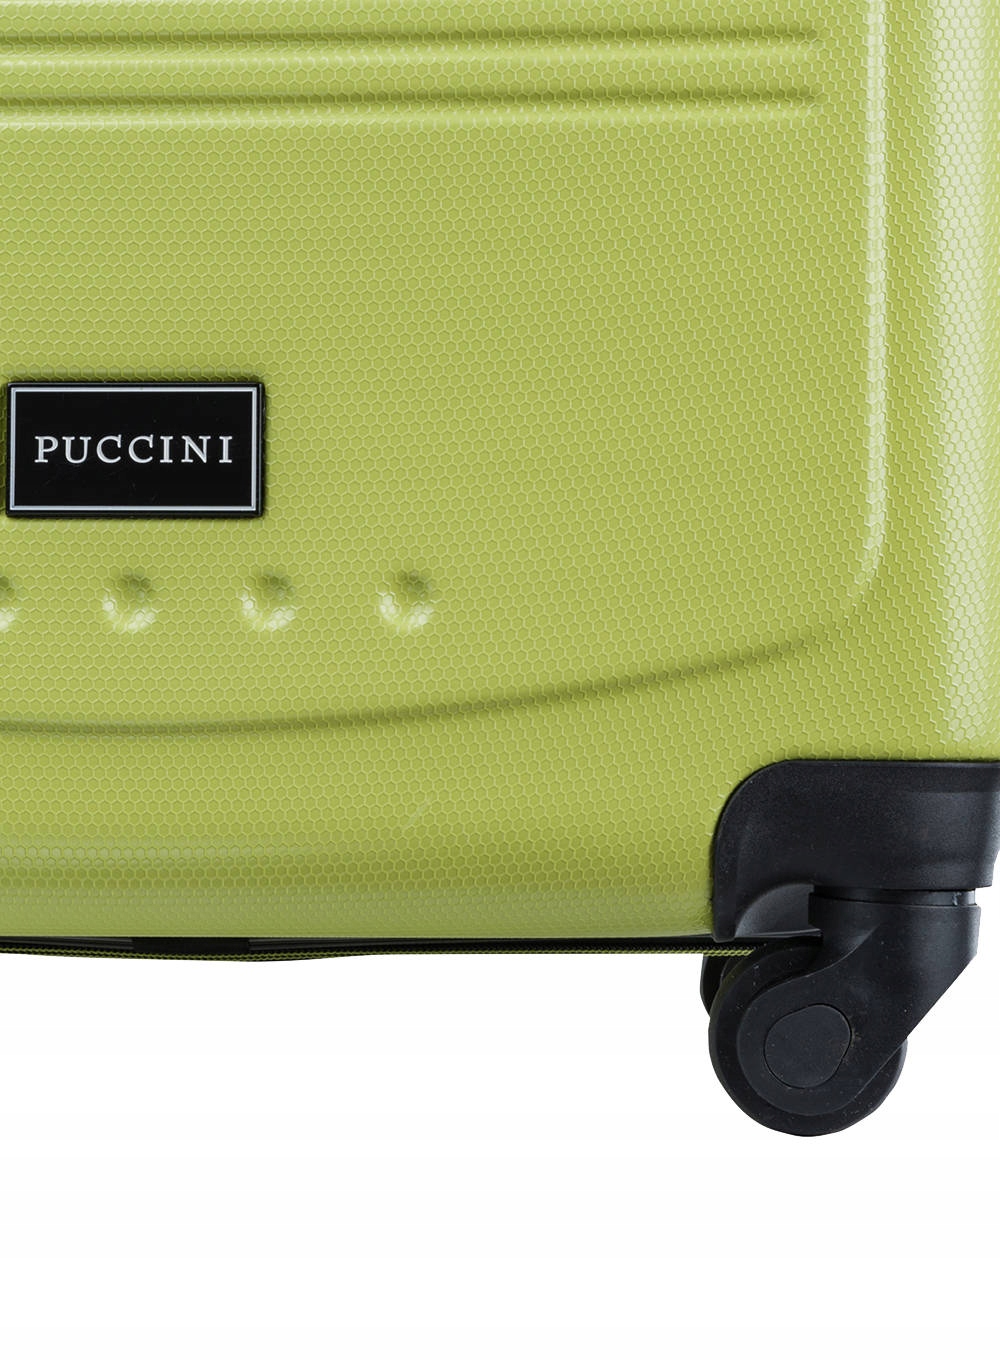 Vidutinis lagaminas Puccini Corfu 77 l - kalkės Pagrindinė medžiaga ABS